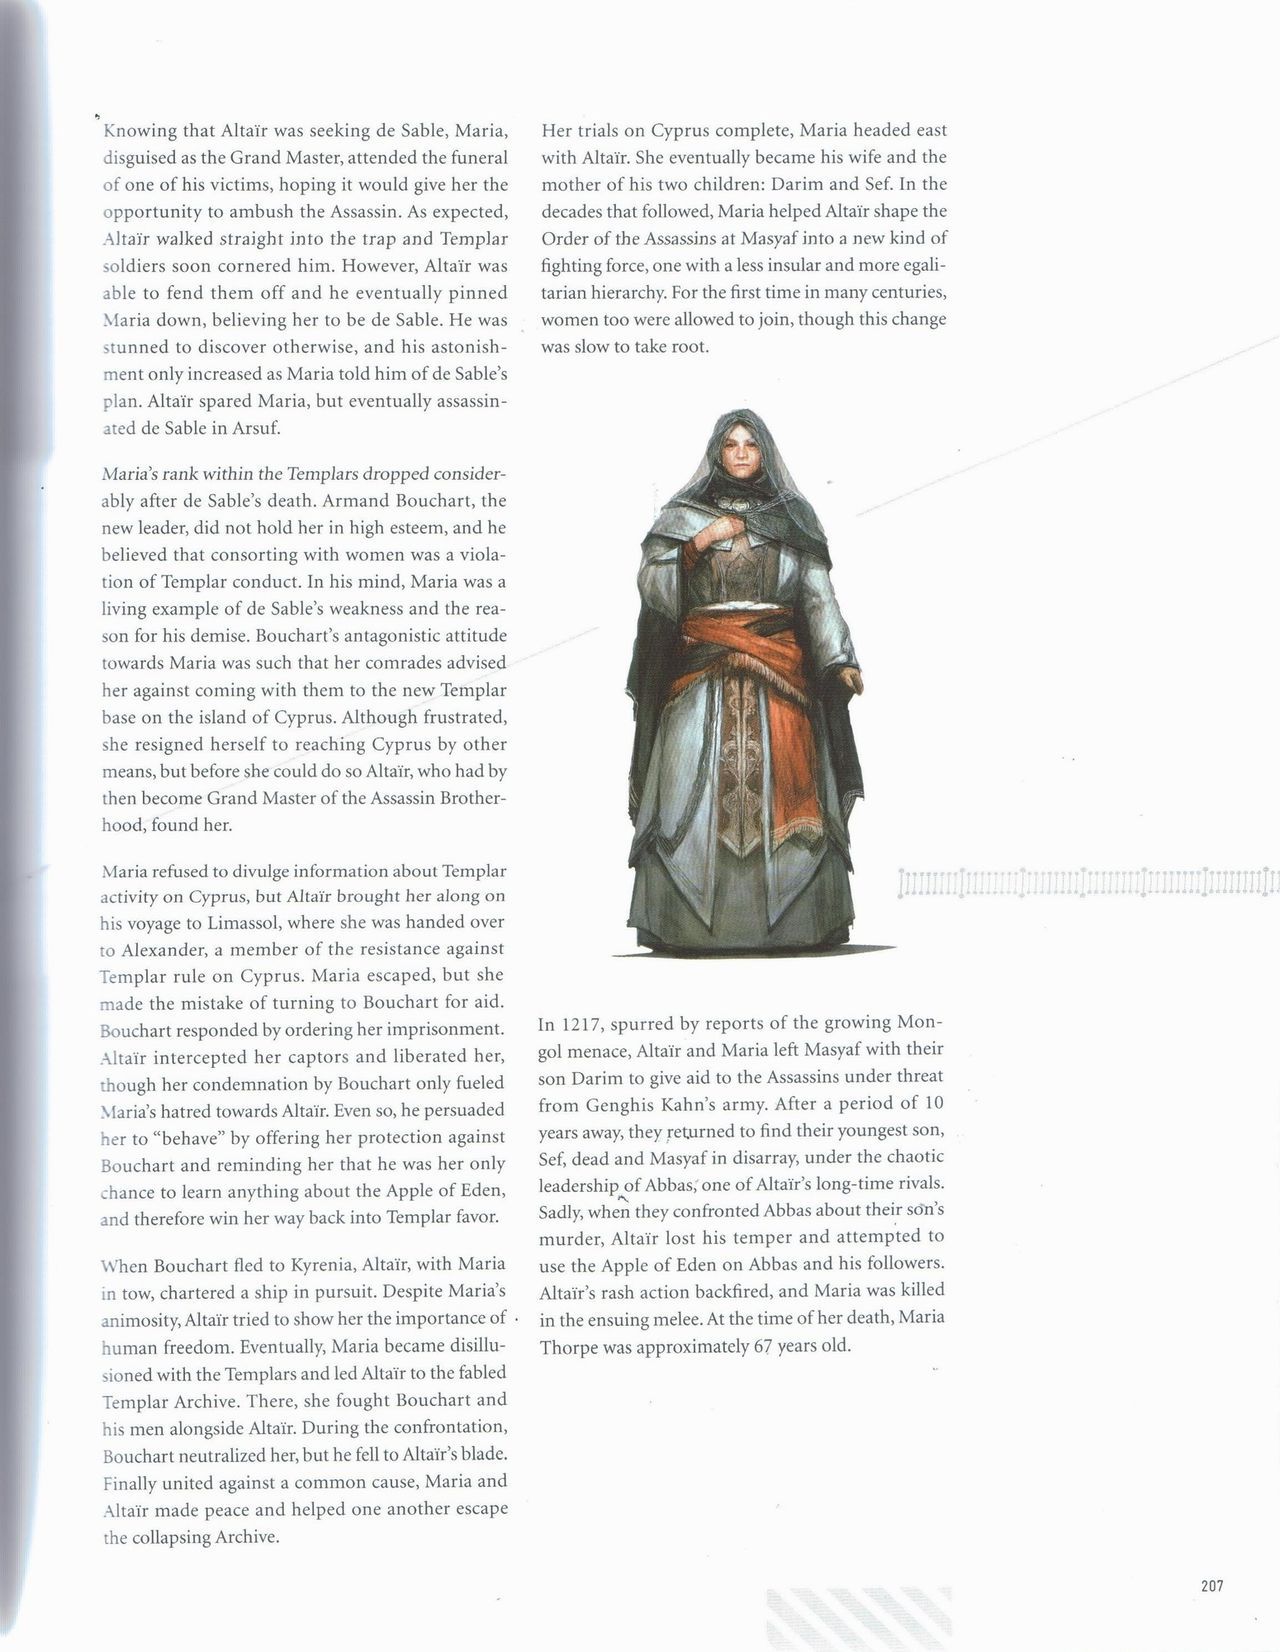 Assassin's Creed Encyclopedia 2.0 208